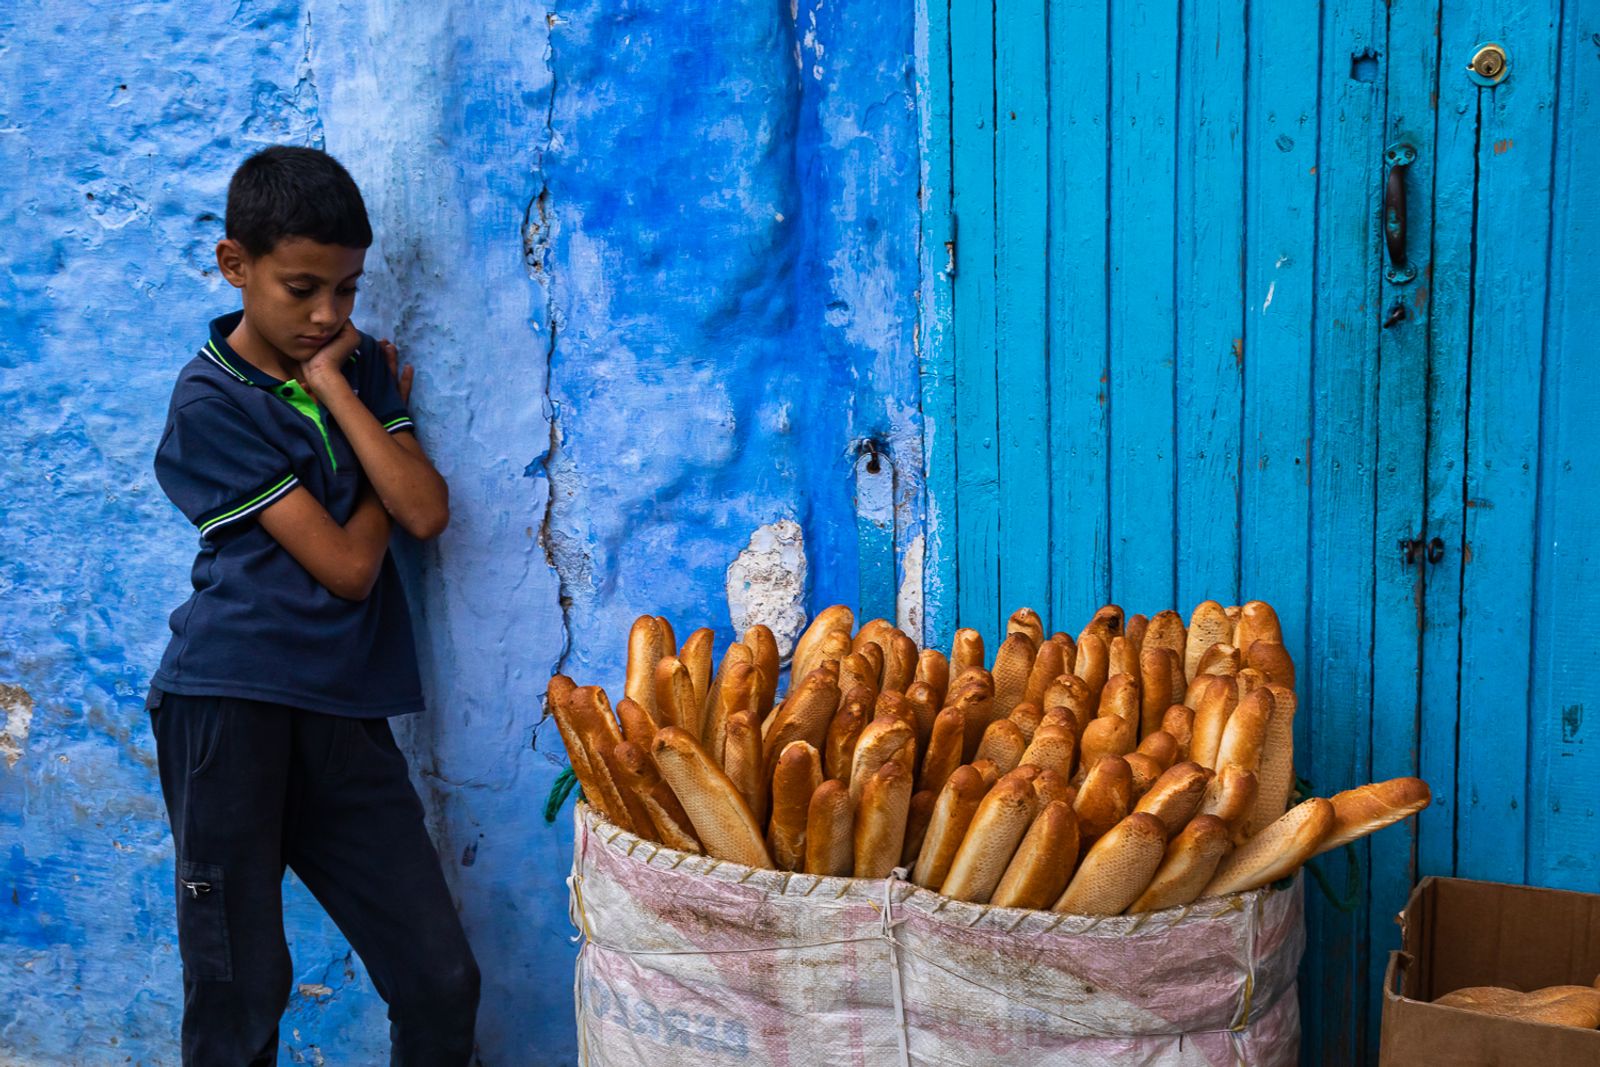 © Amadeu Martinez Silvoso - Boy selling bread